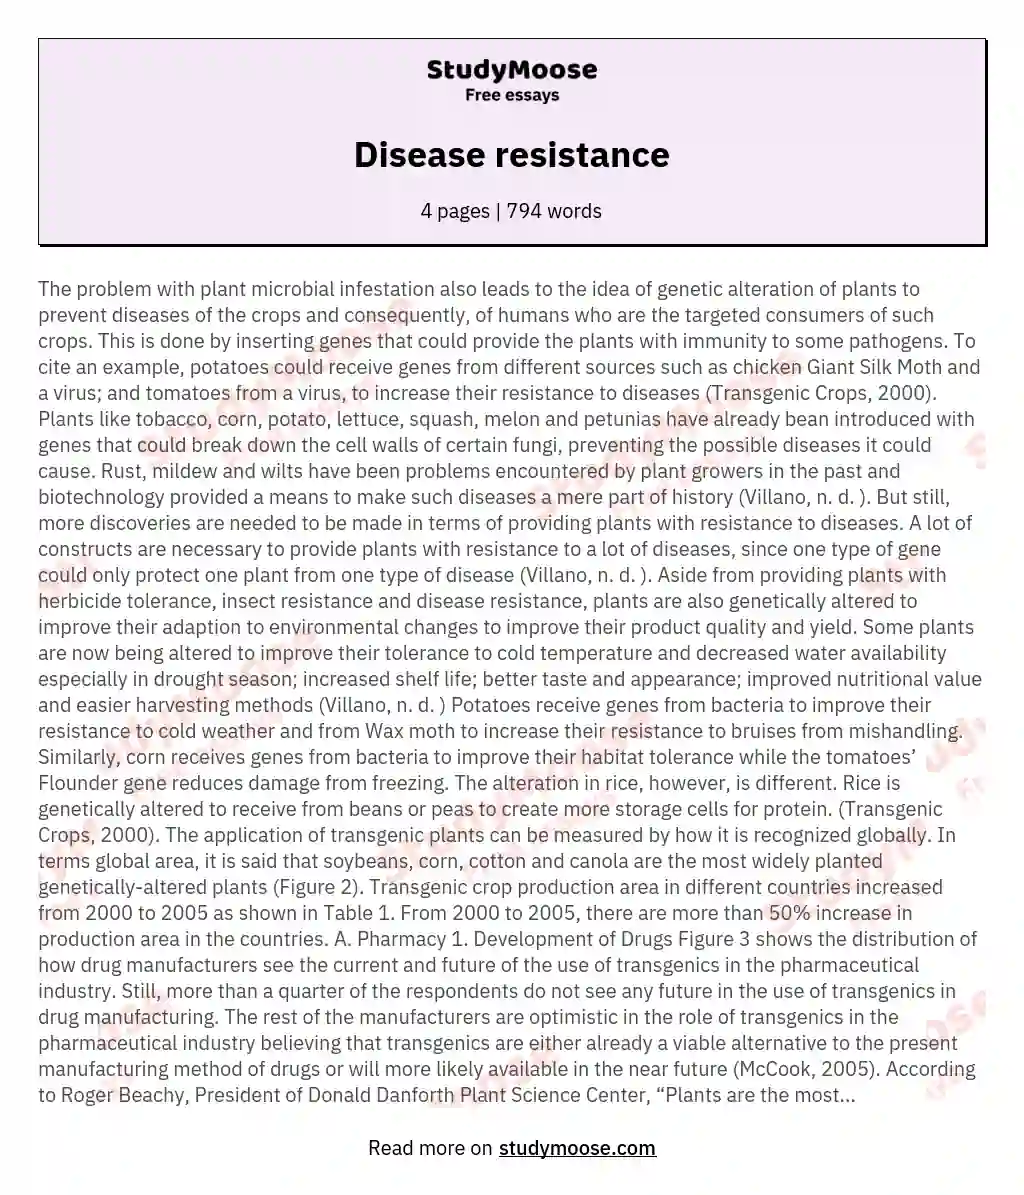 Disease resistance essay